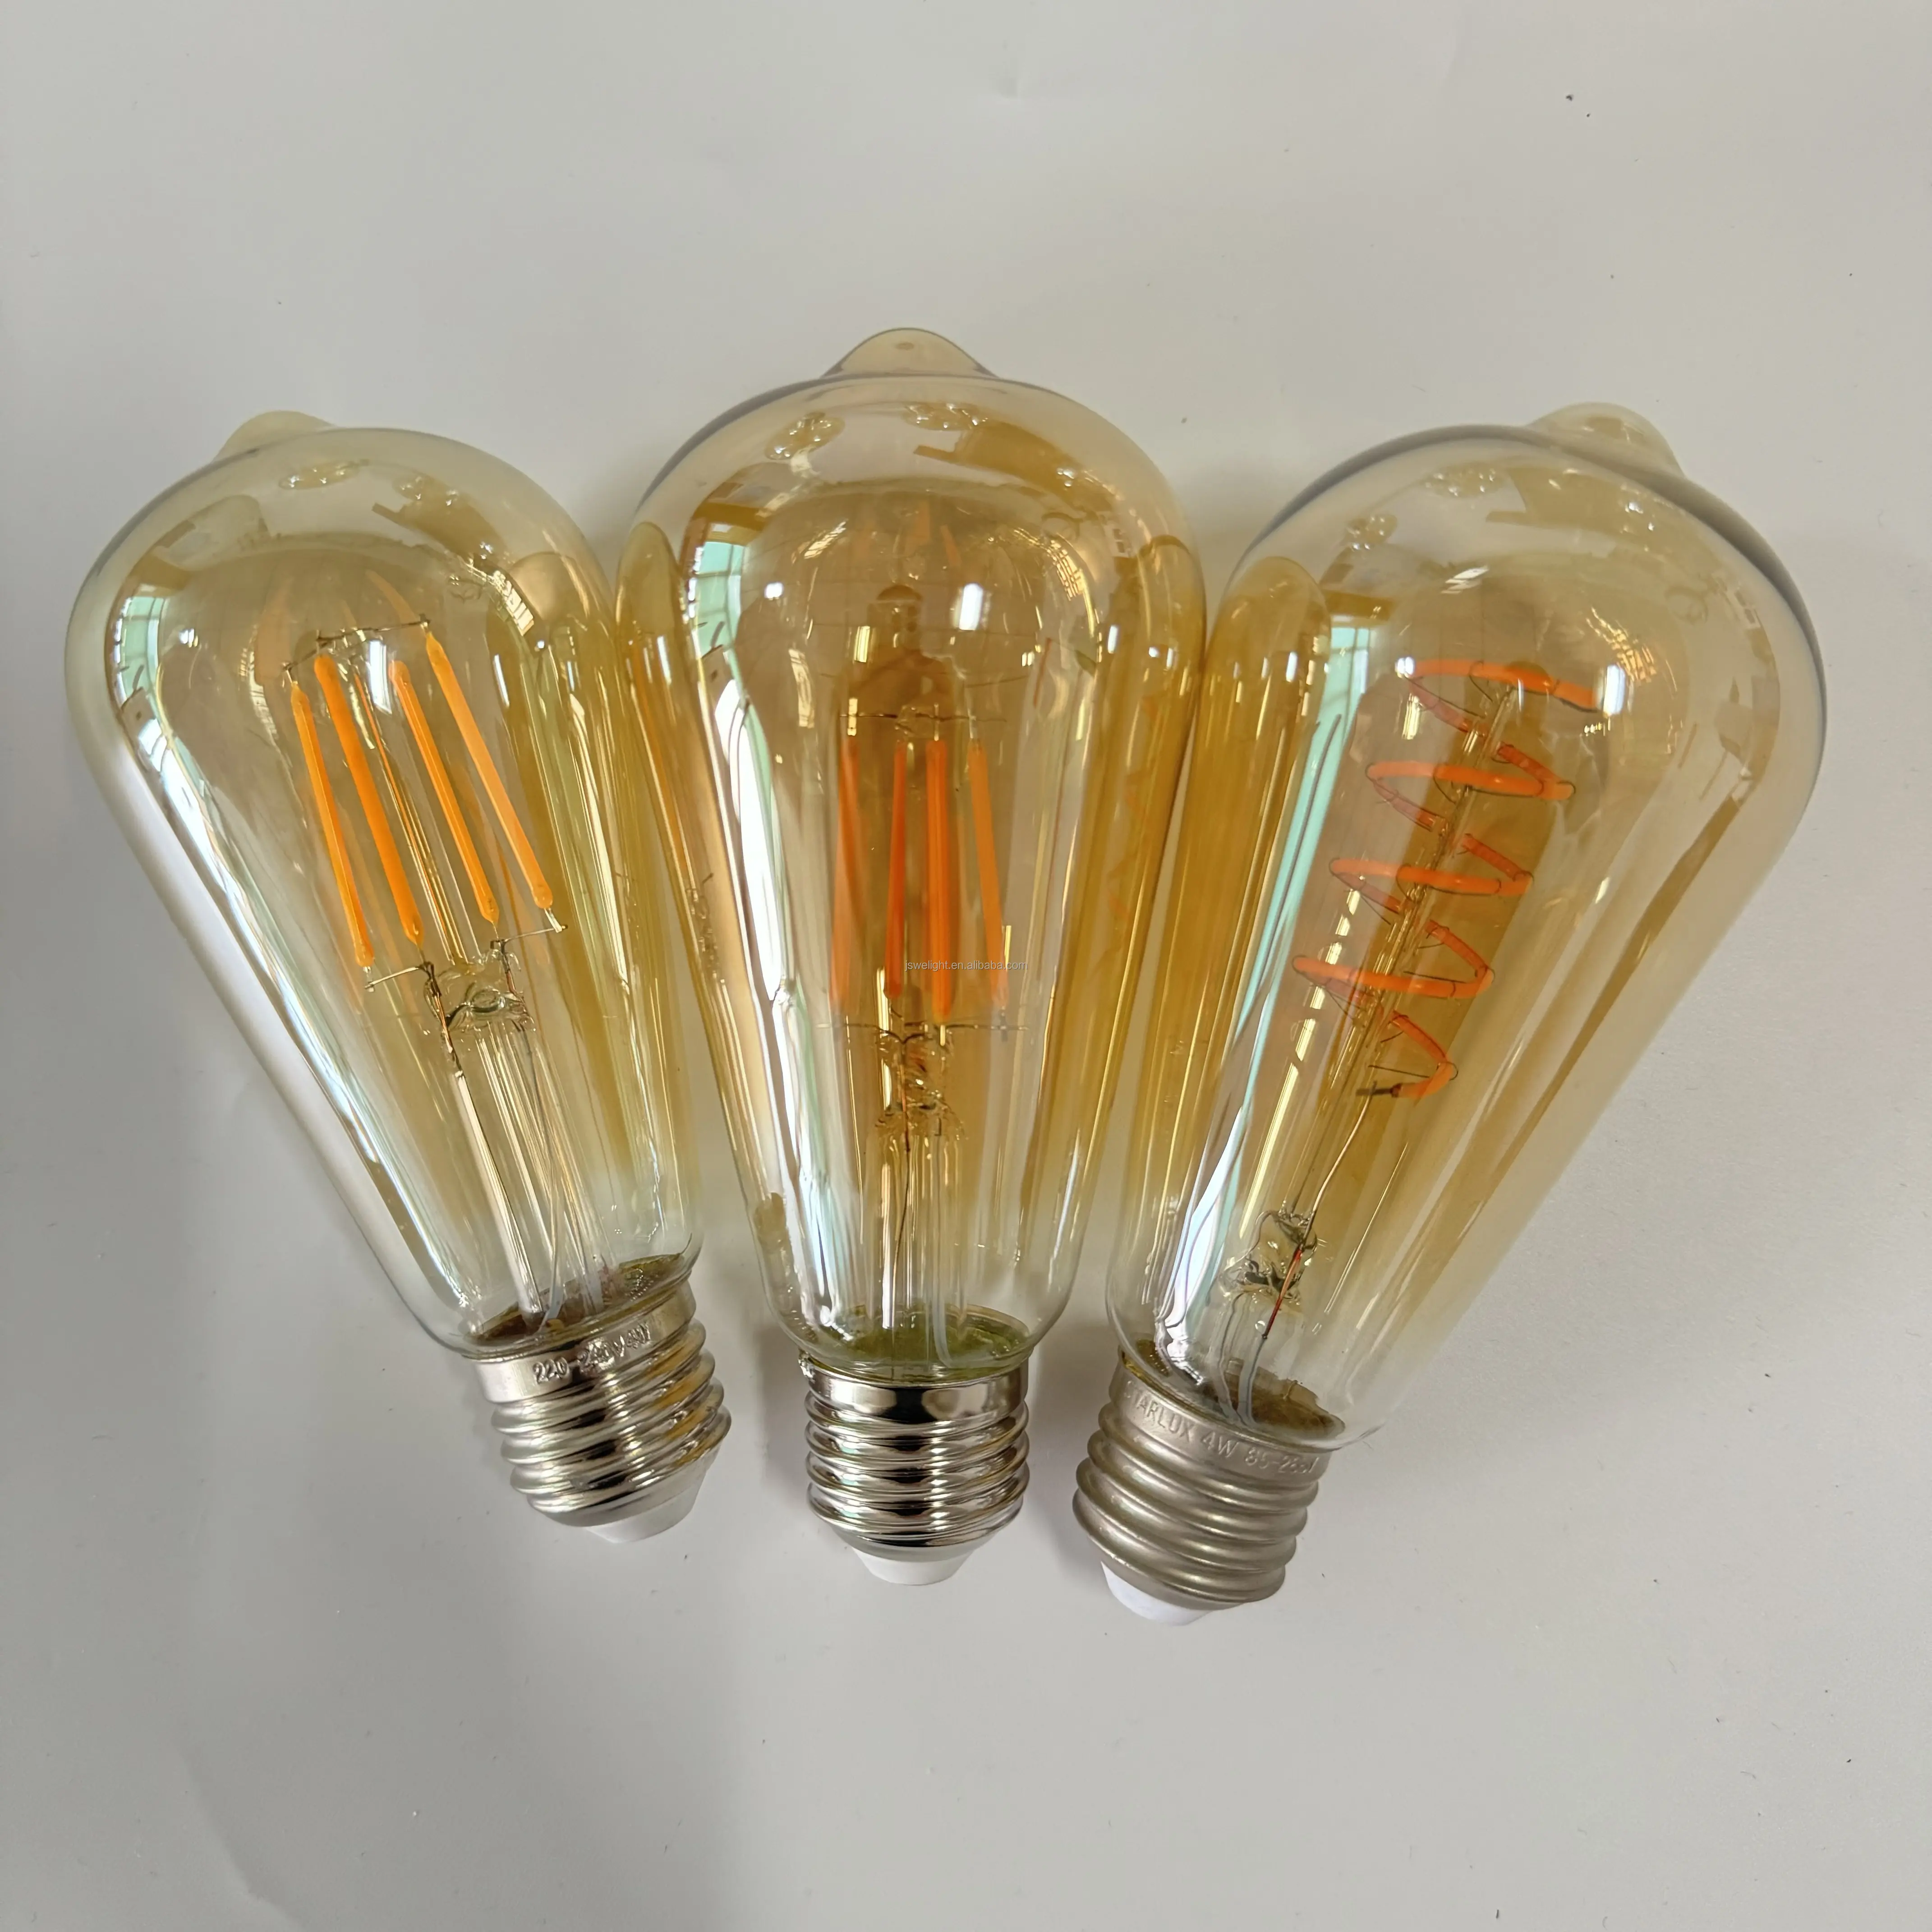 Beleuchtung Dekoration Led ST64 Vintage Glas Stromsparlampen 220 V 110 V 4 W 6 W E26 E27 LED-Glaslampe Licht